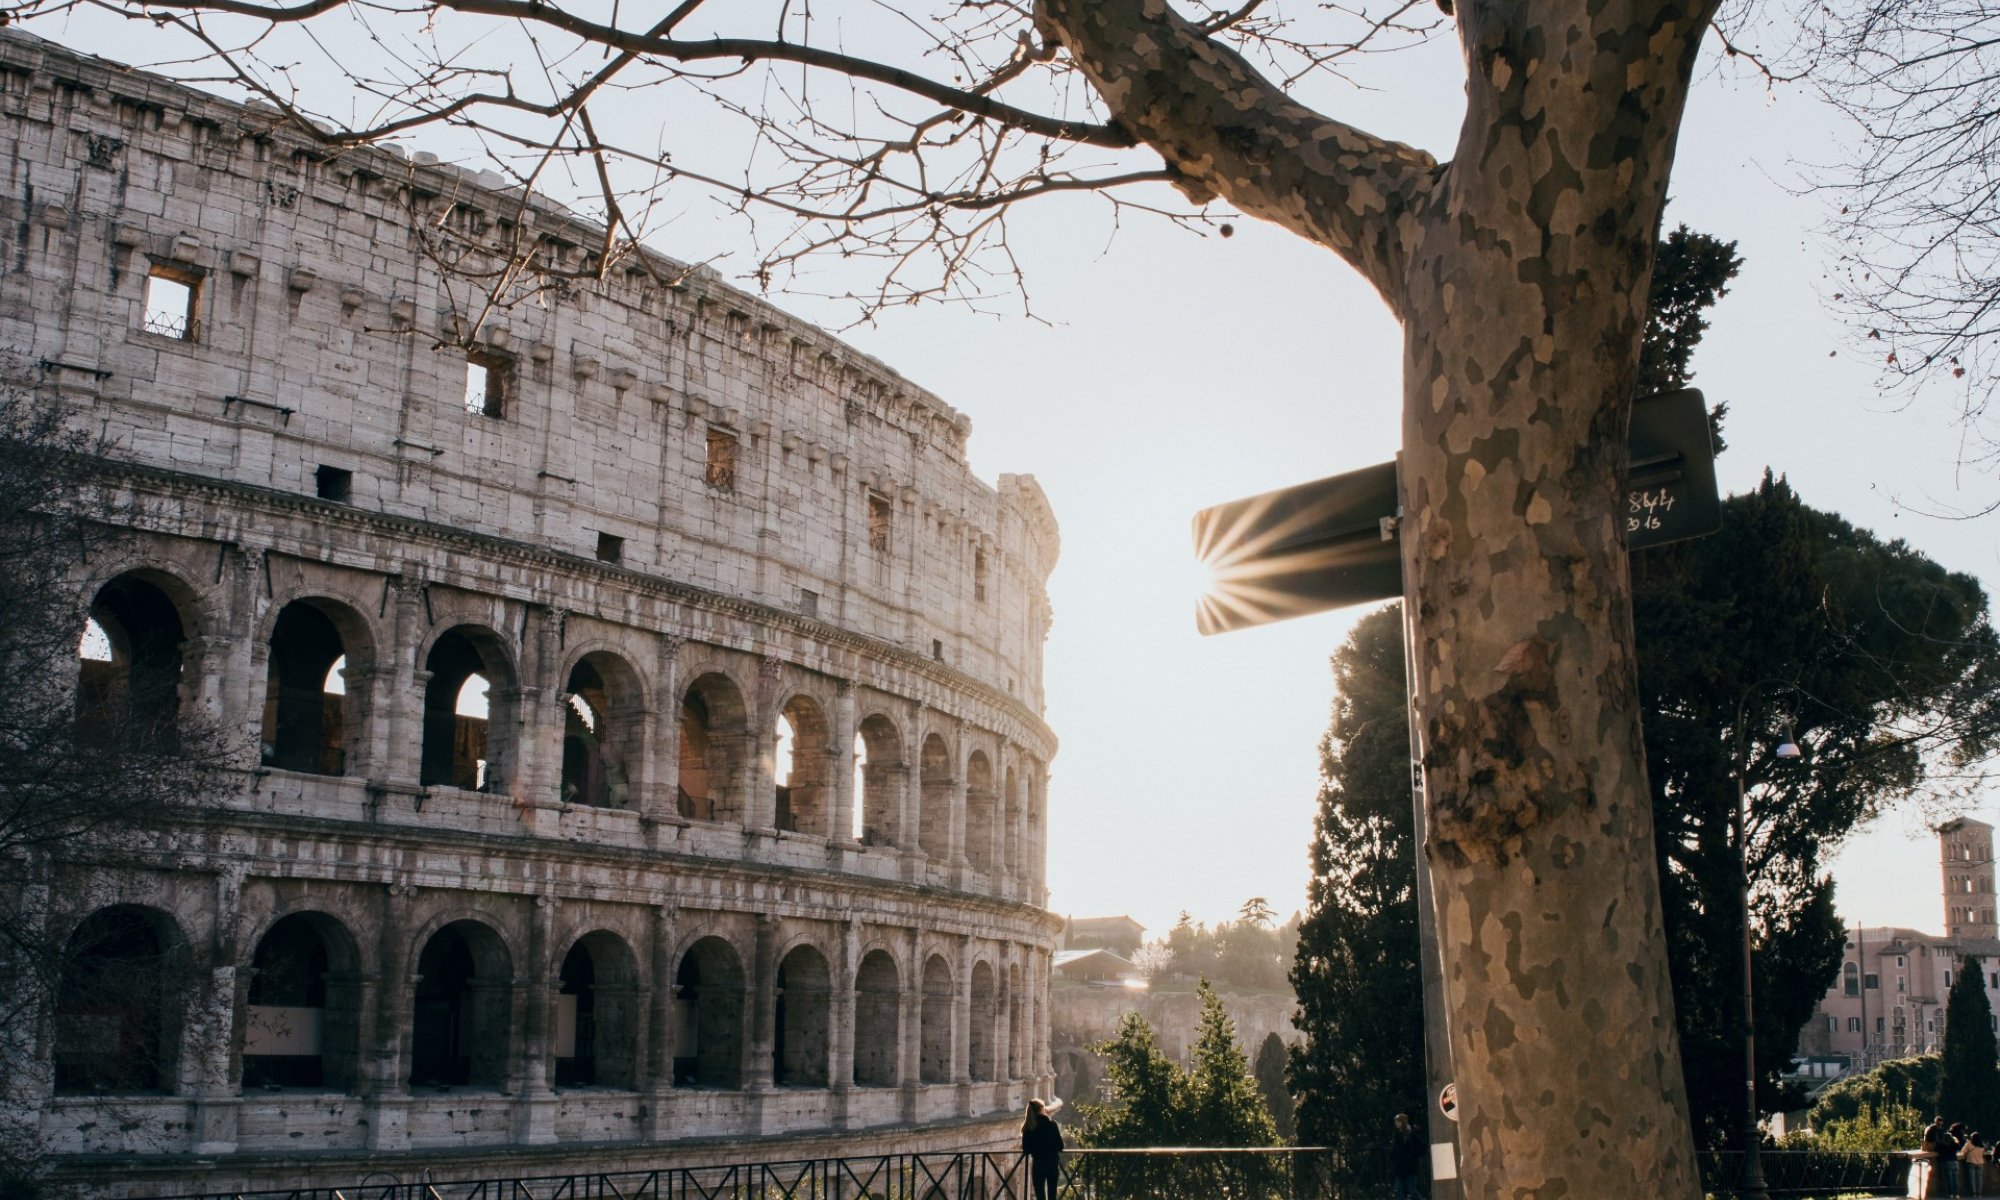 Pisatelj Paolo Giordano opisuje življenje v Rimu v času karantene.